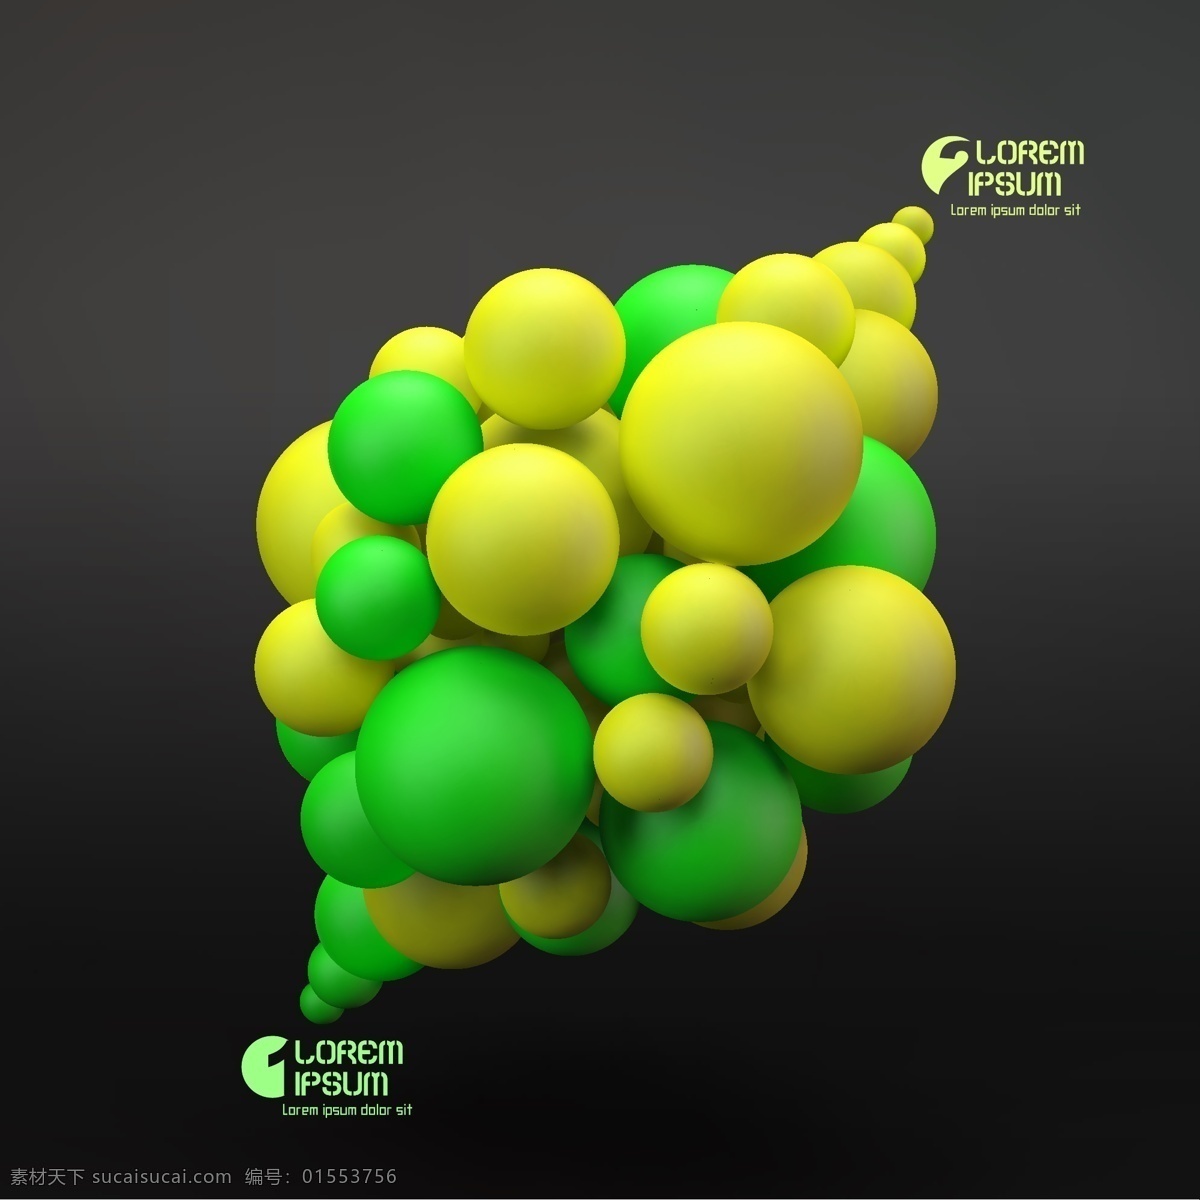 黄绿色 球形 背景 立体背景 立体图案 背景图案 3d背景 生活百科 矢量素材 黑色